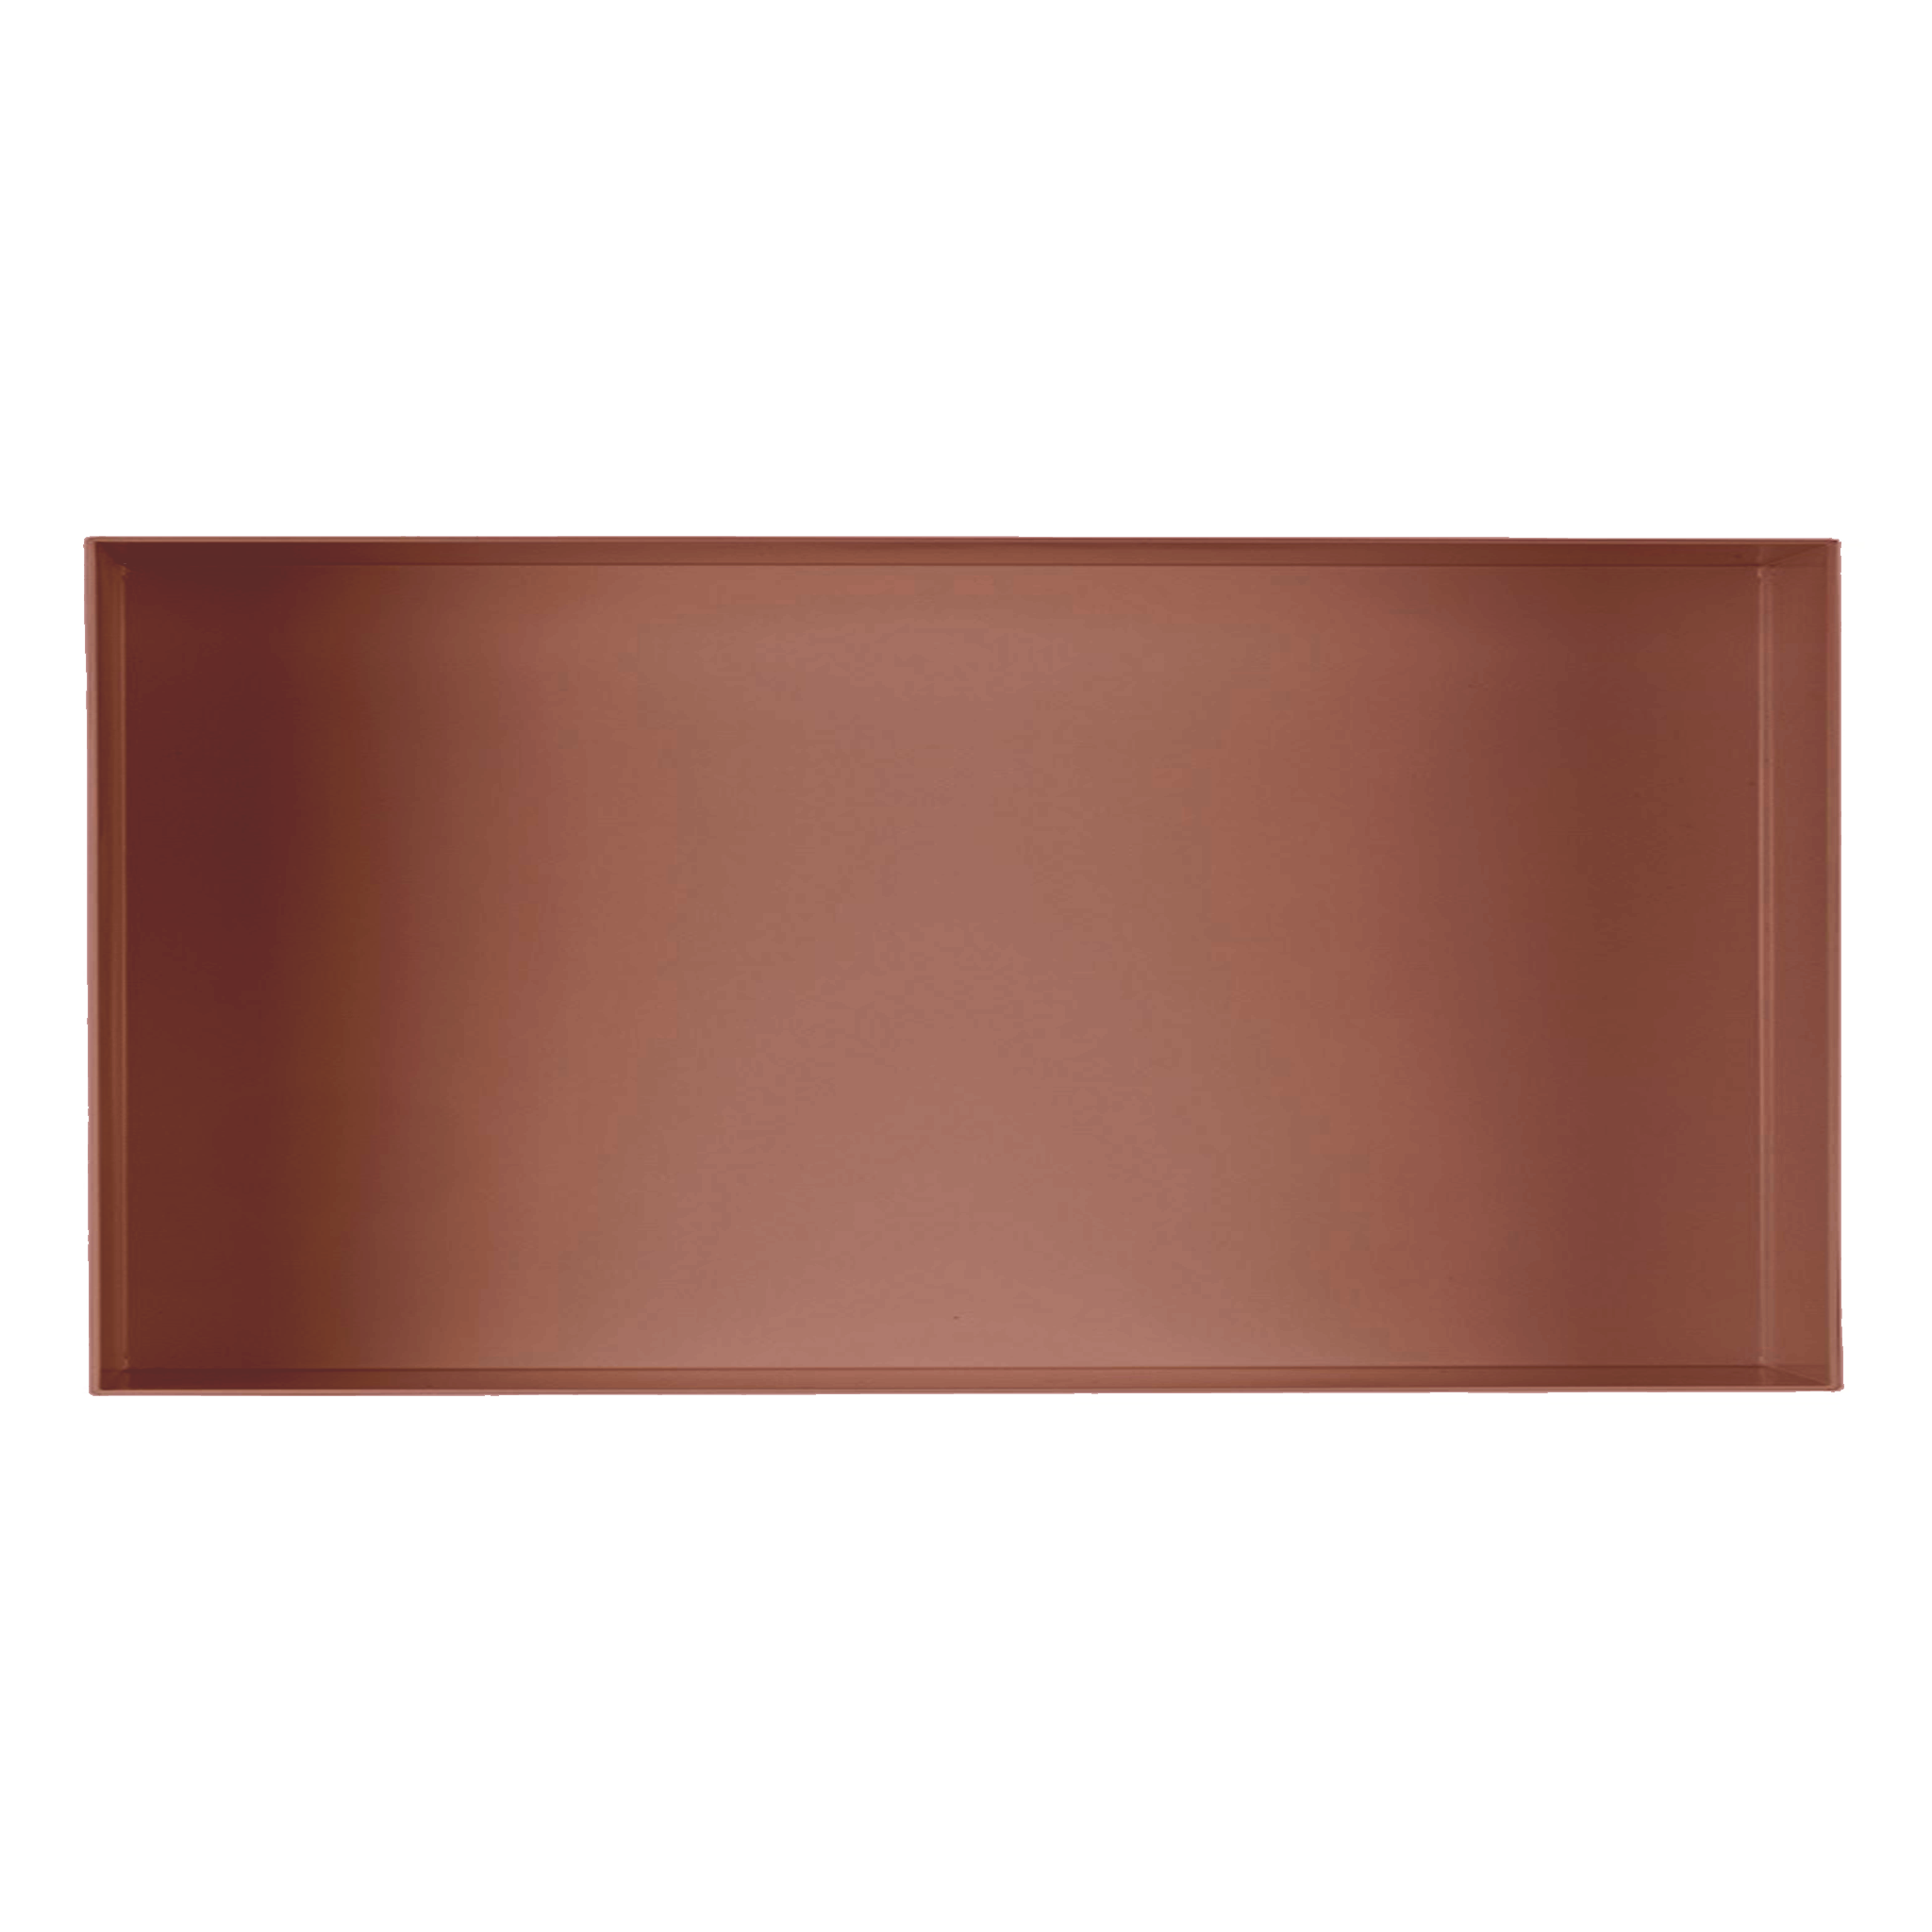 Valli Home – V-Box, Nicchia portaoggetti in Metallo smaltato color Rosso KK114, Misura 30X60 P. 10 cm – V-BOX.MLLO.30X60.114